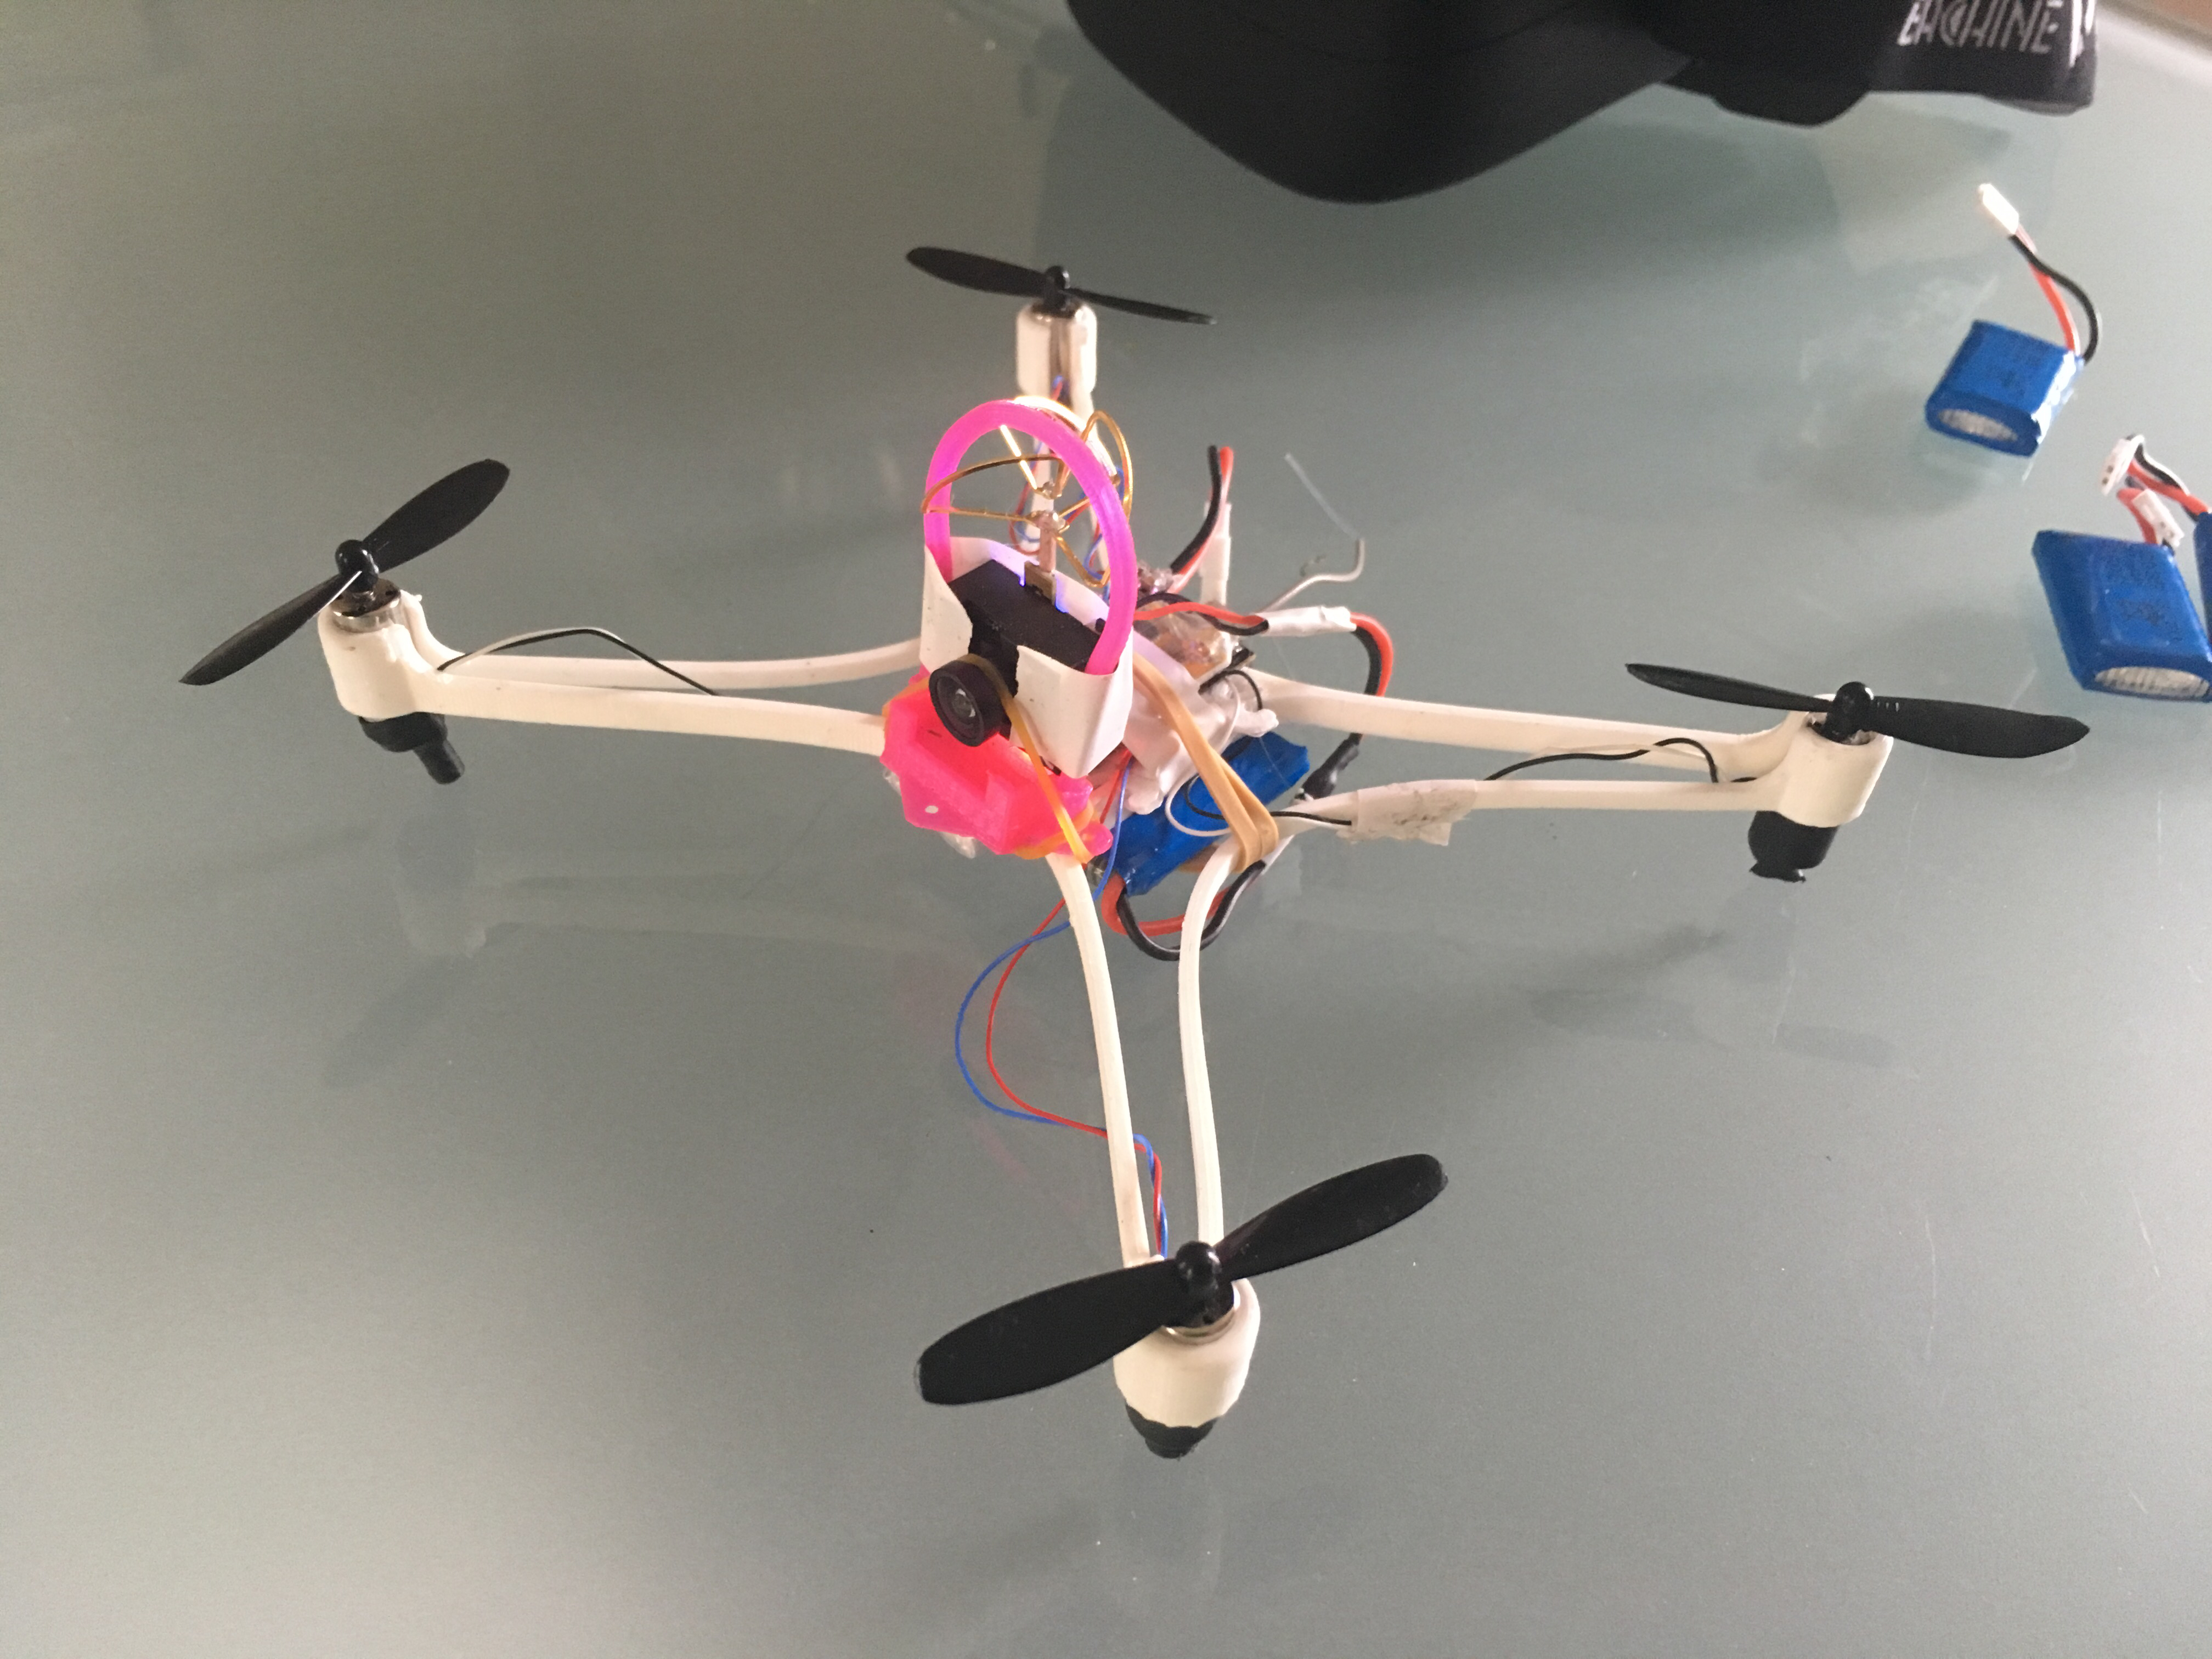 Un drone imprimé en 3D – 130mm Frame